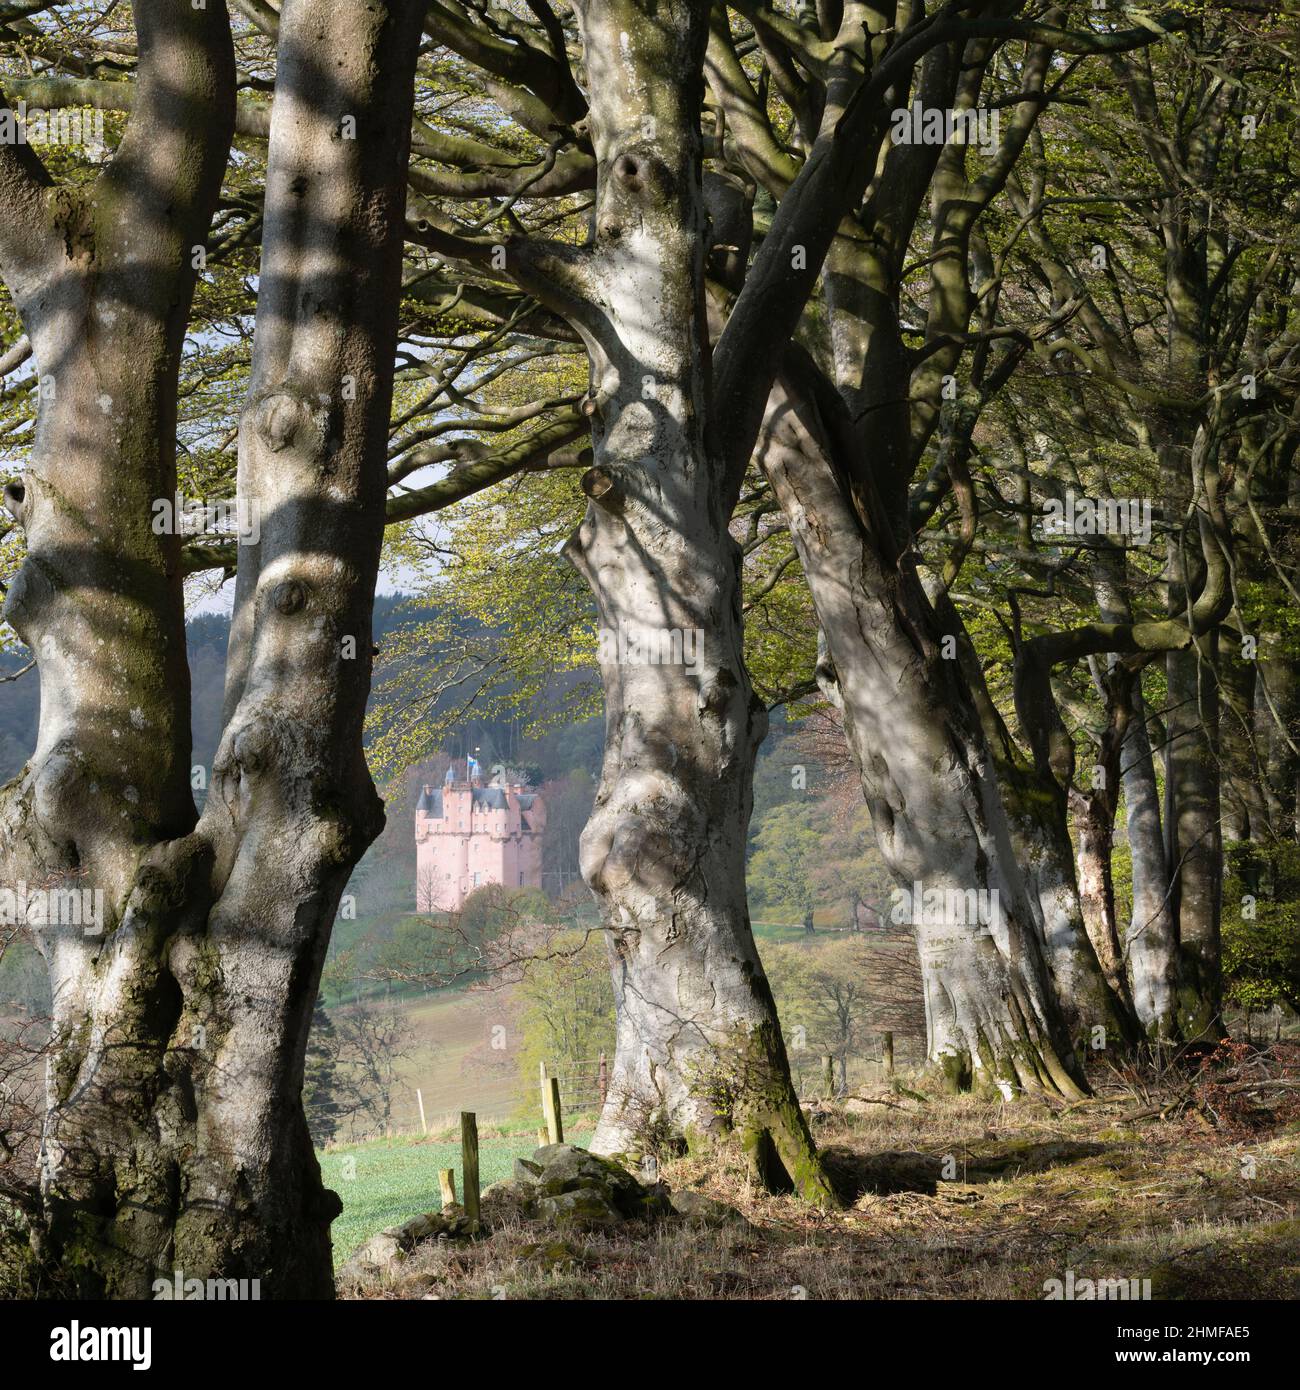 Les chutes du soleil de Spring se sont envolées sur une ligne d'arbres de Beech (Fagus sylvatica) avec une vue à travers le château de Craigievar sur un flanc de colline adjacent Banque D'Images